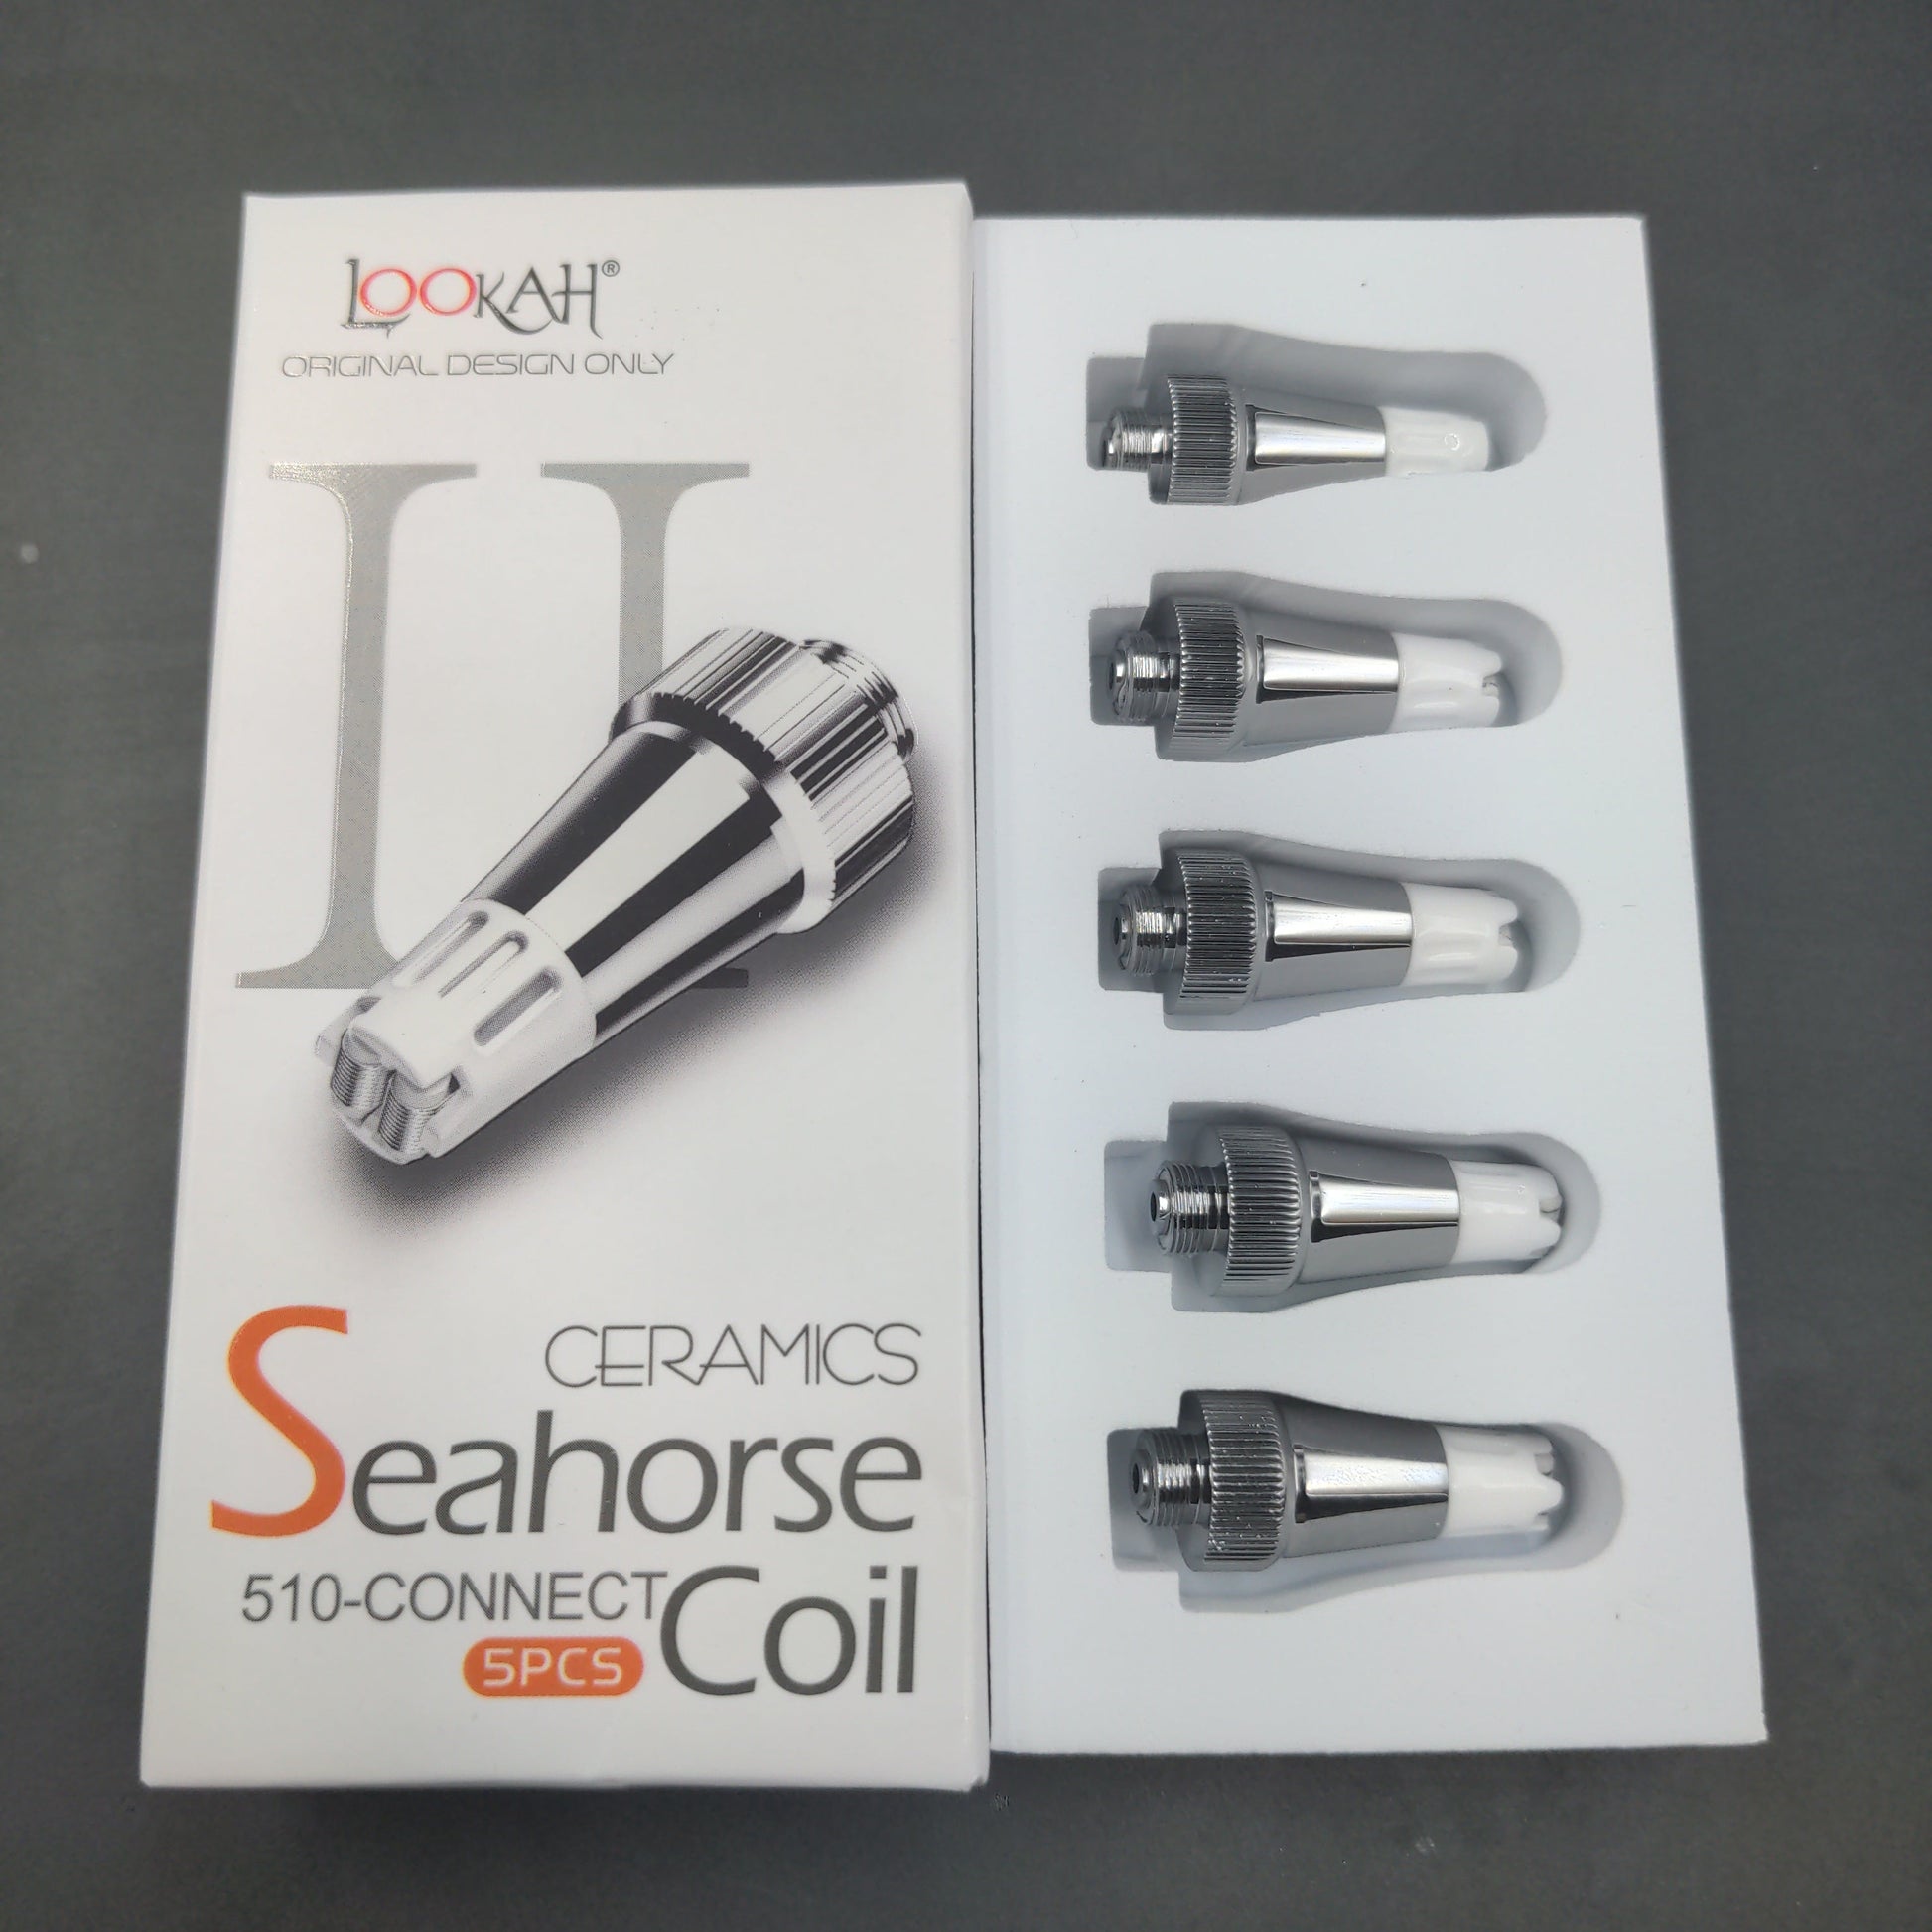 Lookah Seahorse PRO Ceramic Coil II | 5pc Set